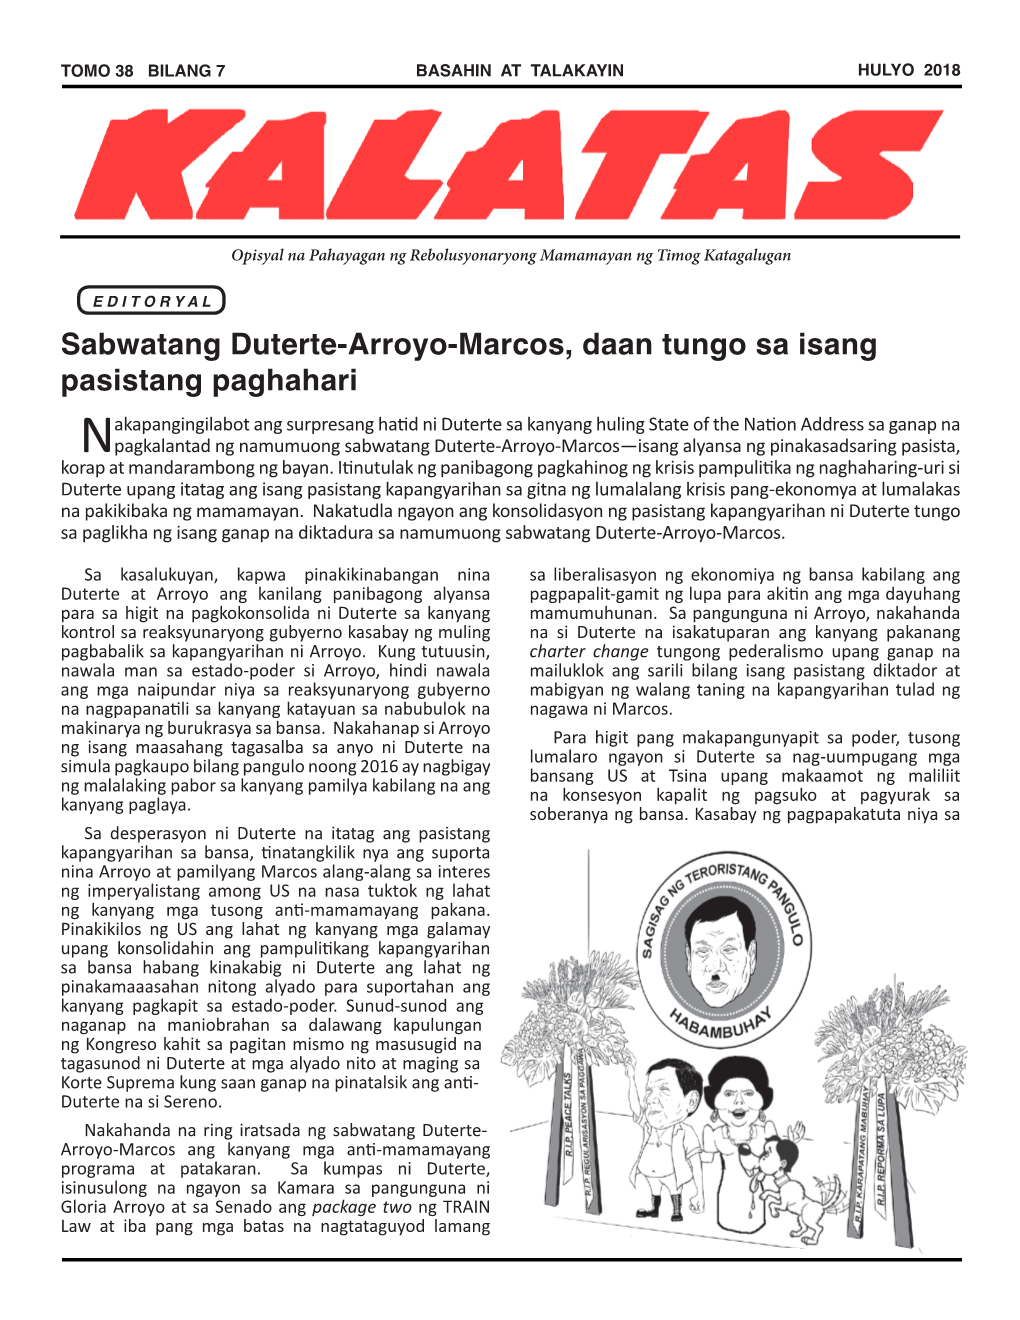 Sabwatang Duterte-Arroyo-Marcos, Daan Tungo Sa Isang Pasistang